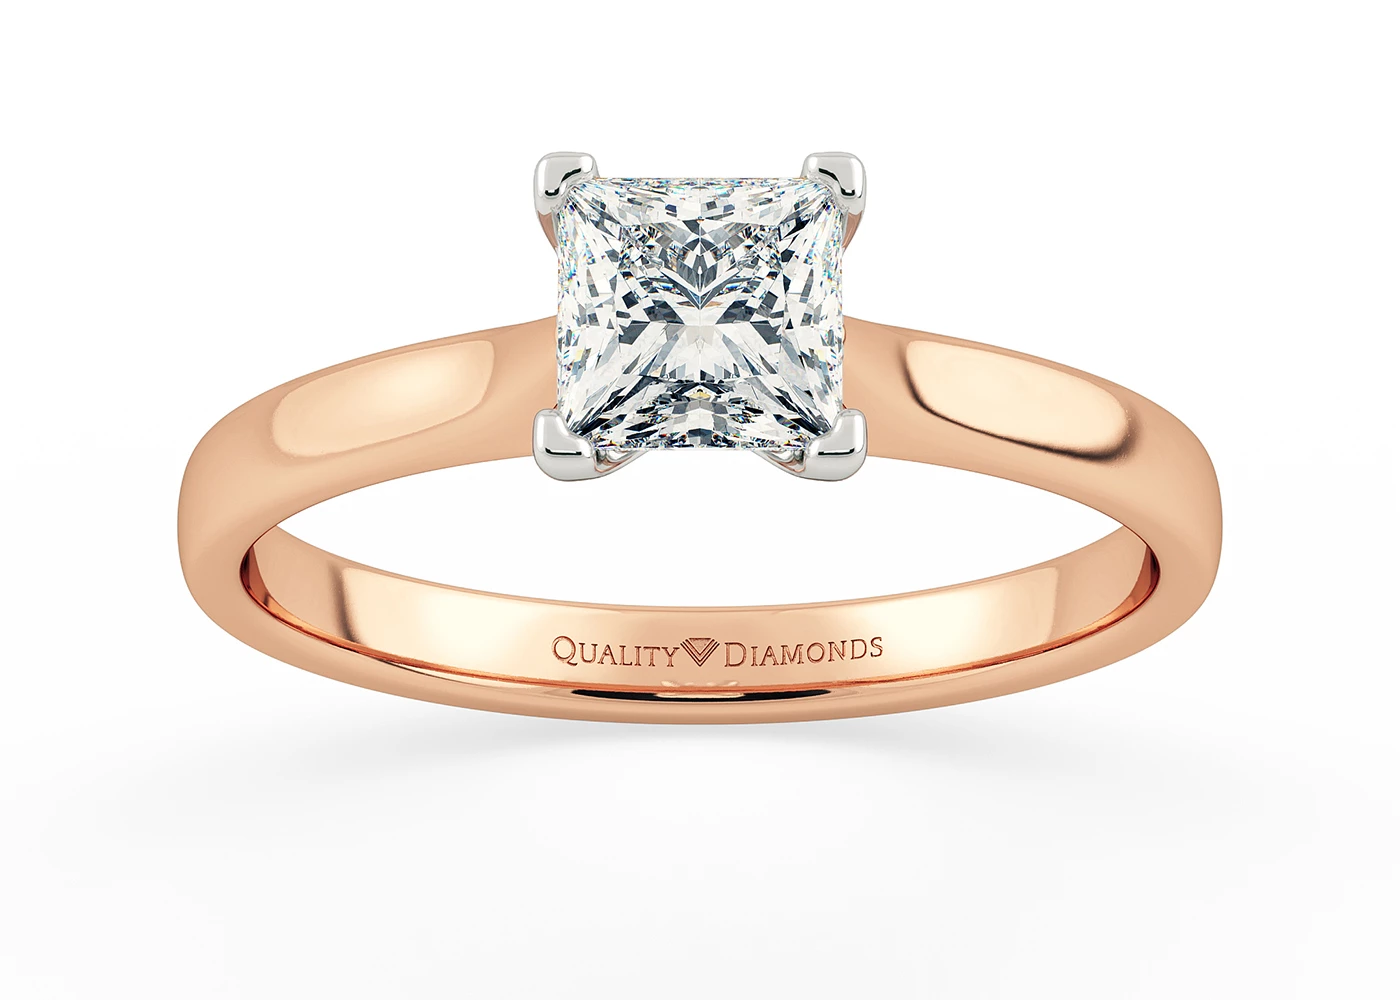 Princess Amara Diamond Ring in 18K Rose Gold